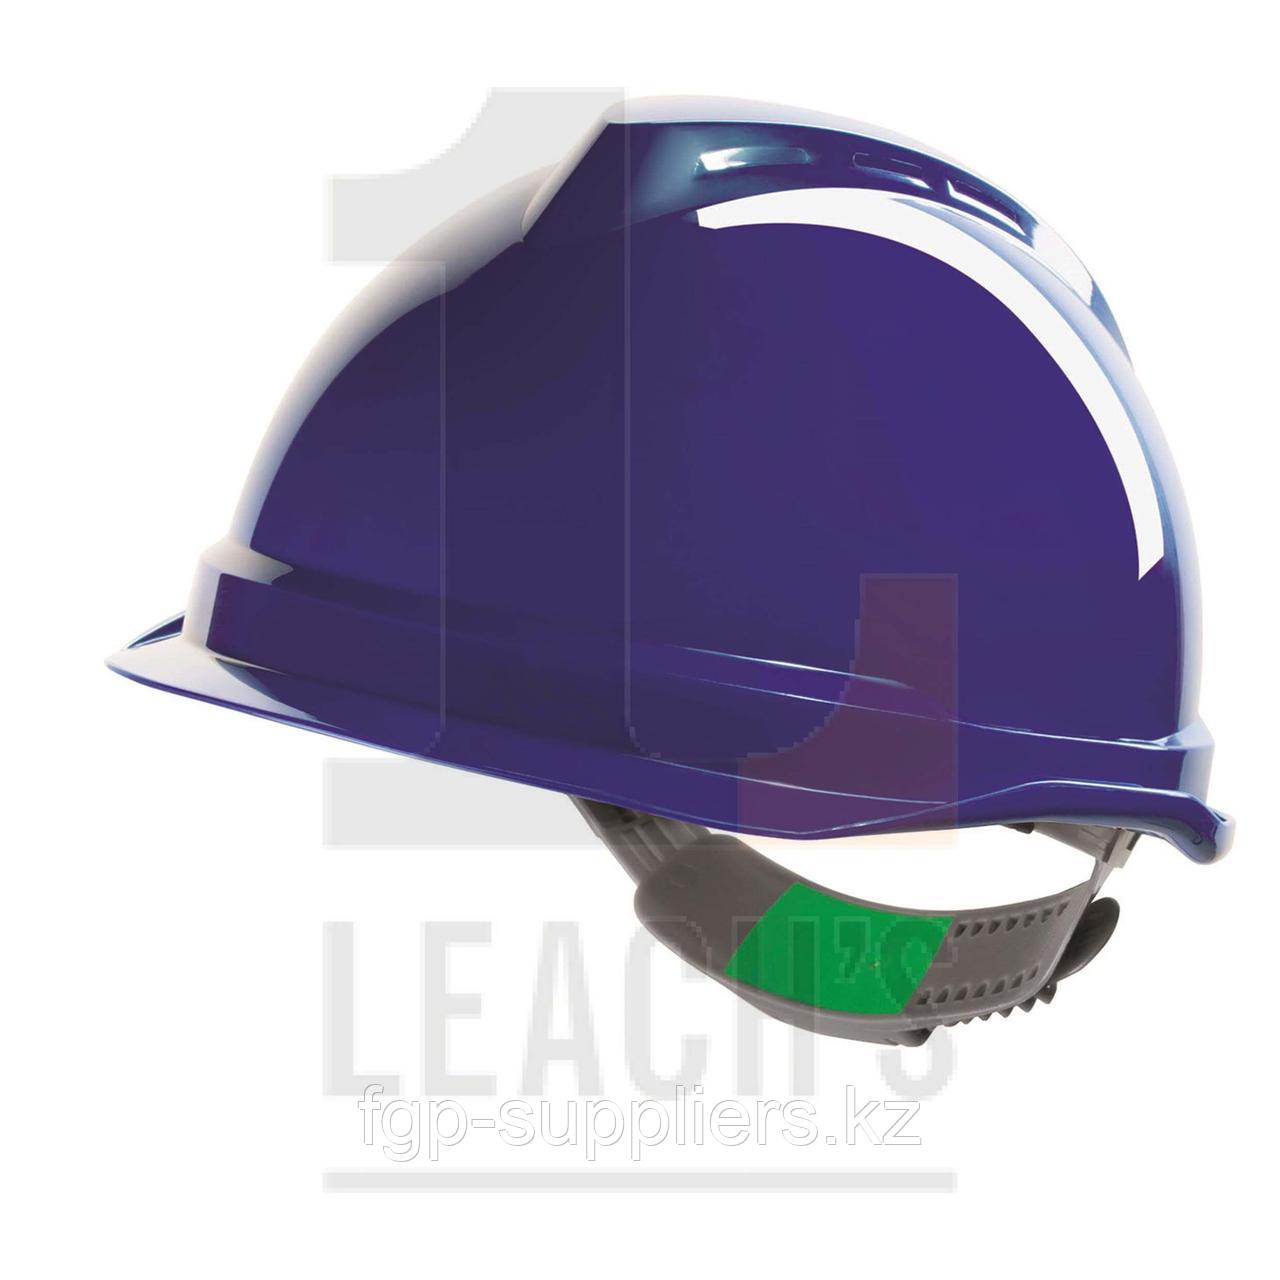 Short Peak Push-Key V-Gard Safety Helmet - Choose your colour / Защитная каска с коротким гребнем V-Gard с системой затяжения на кнопке - цвет на